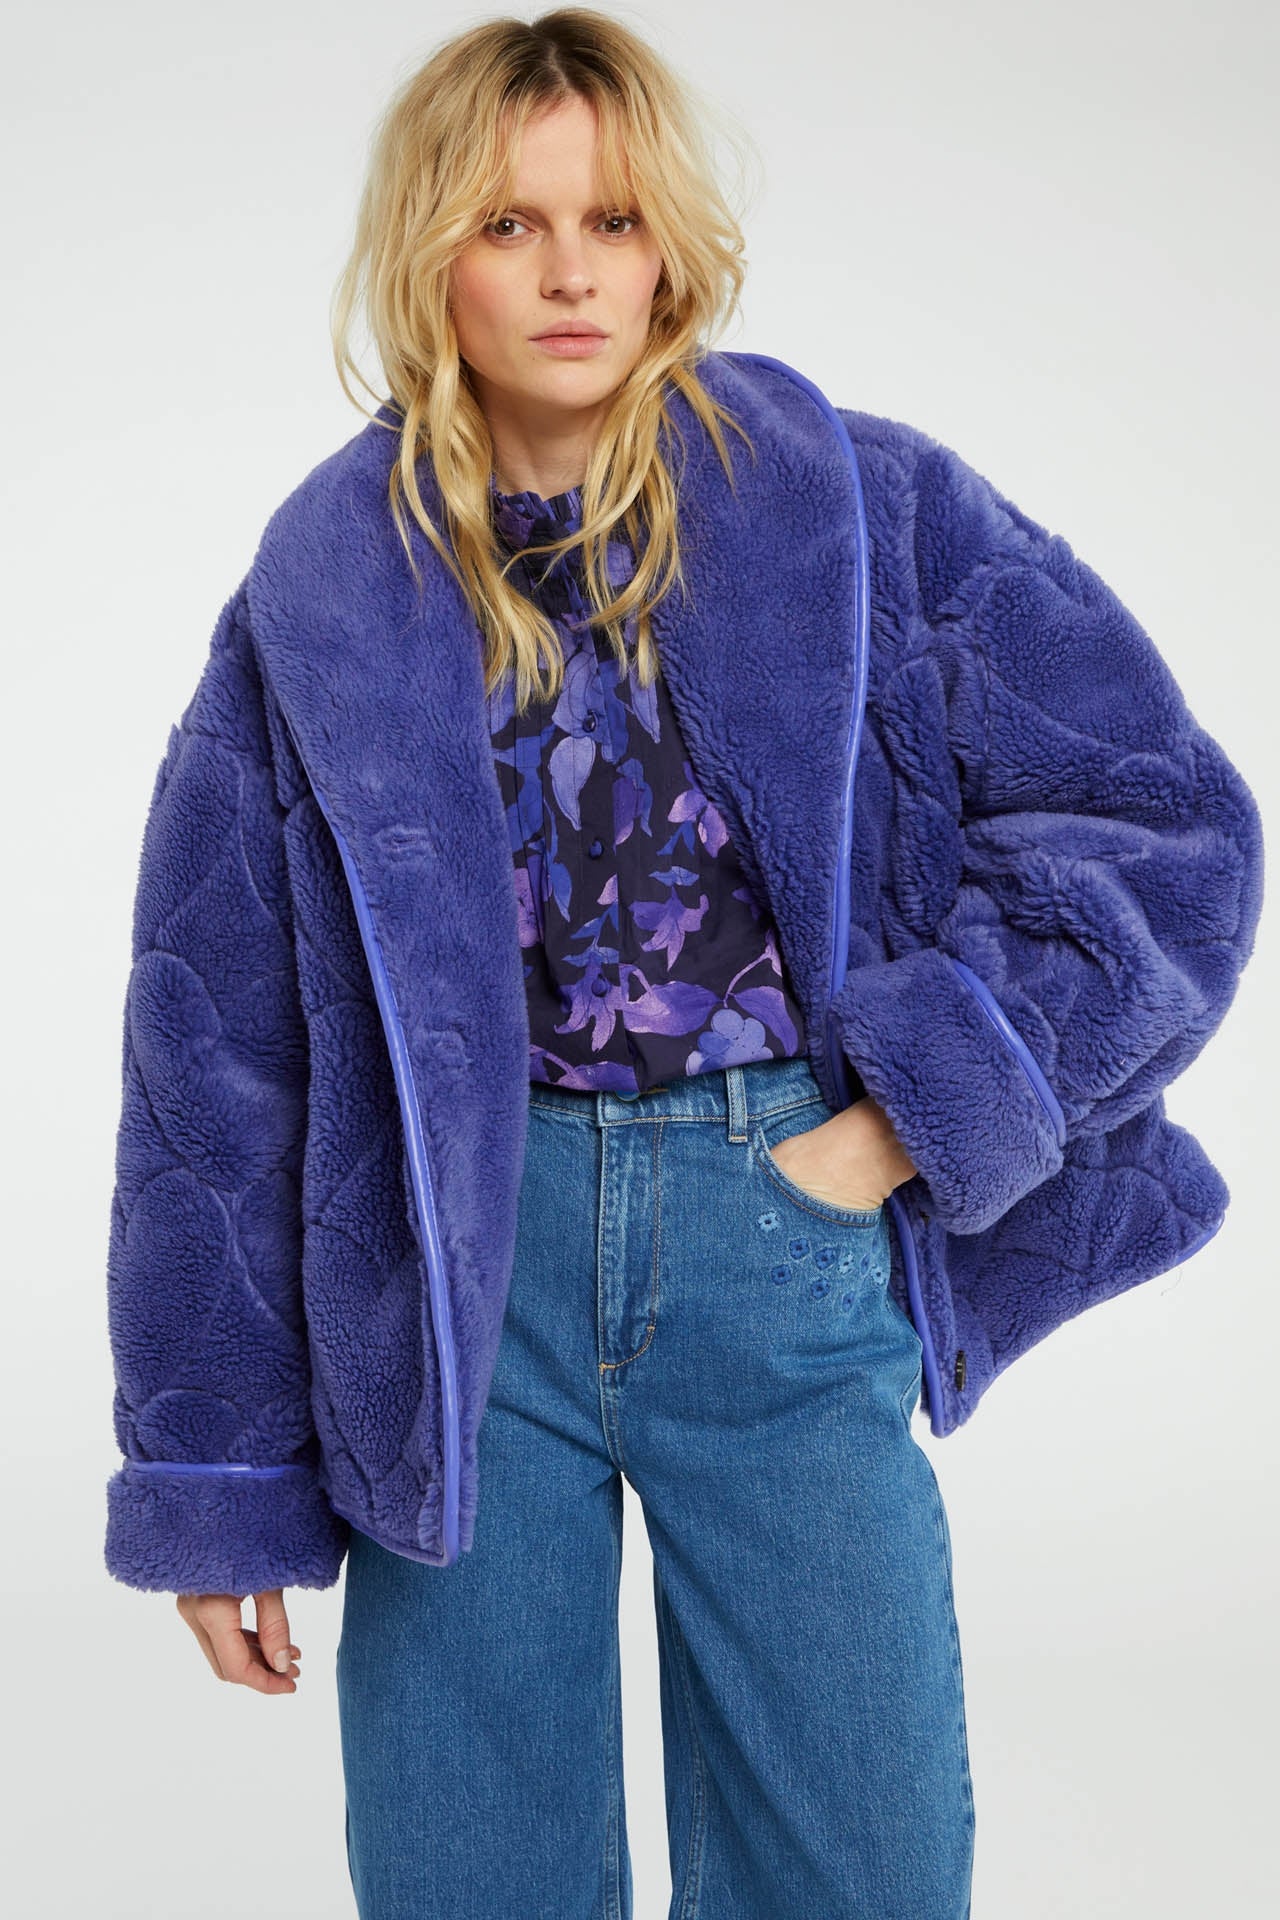 Merlin Jacket | Poppy Purple Melange